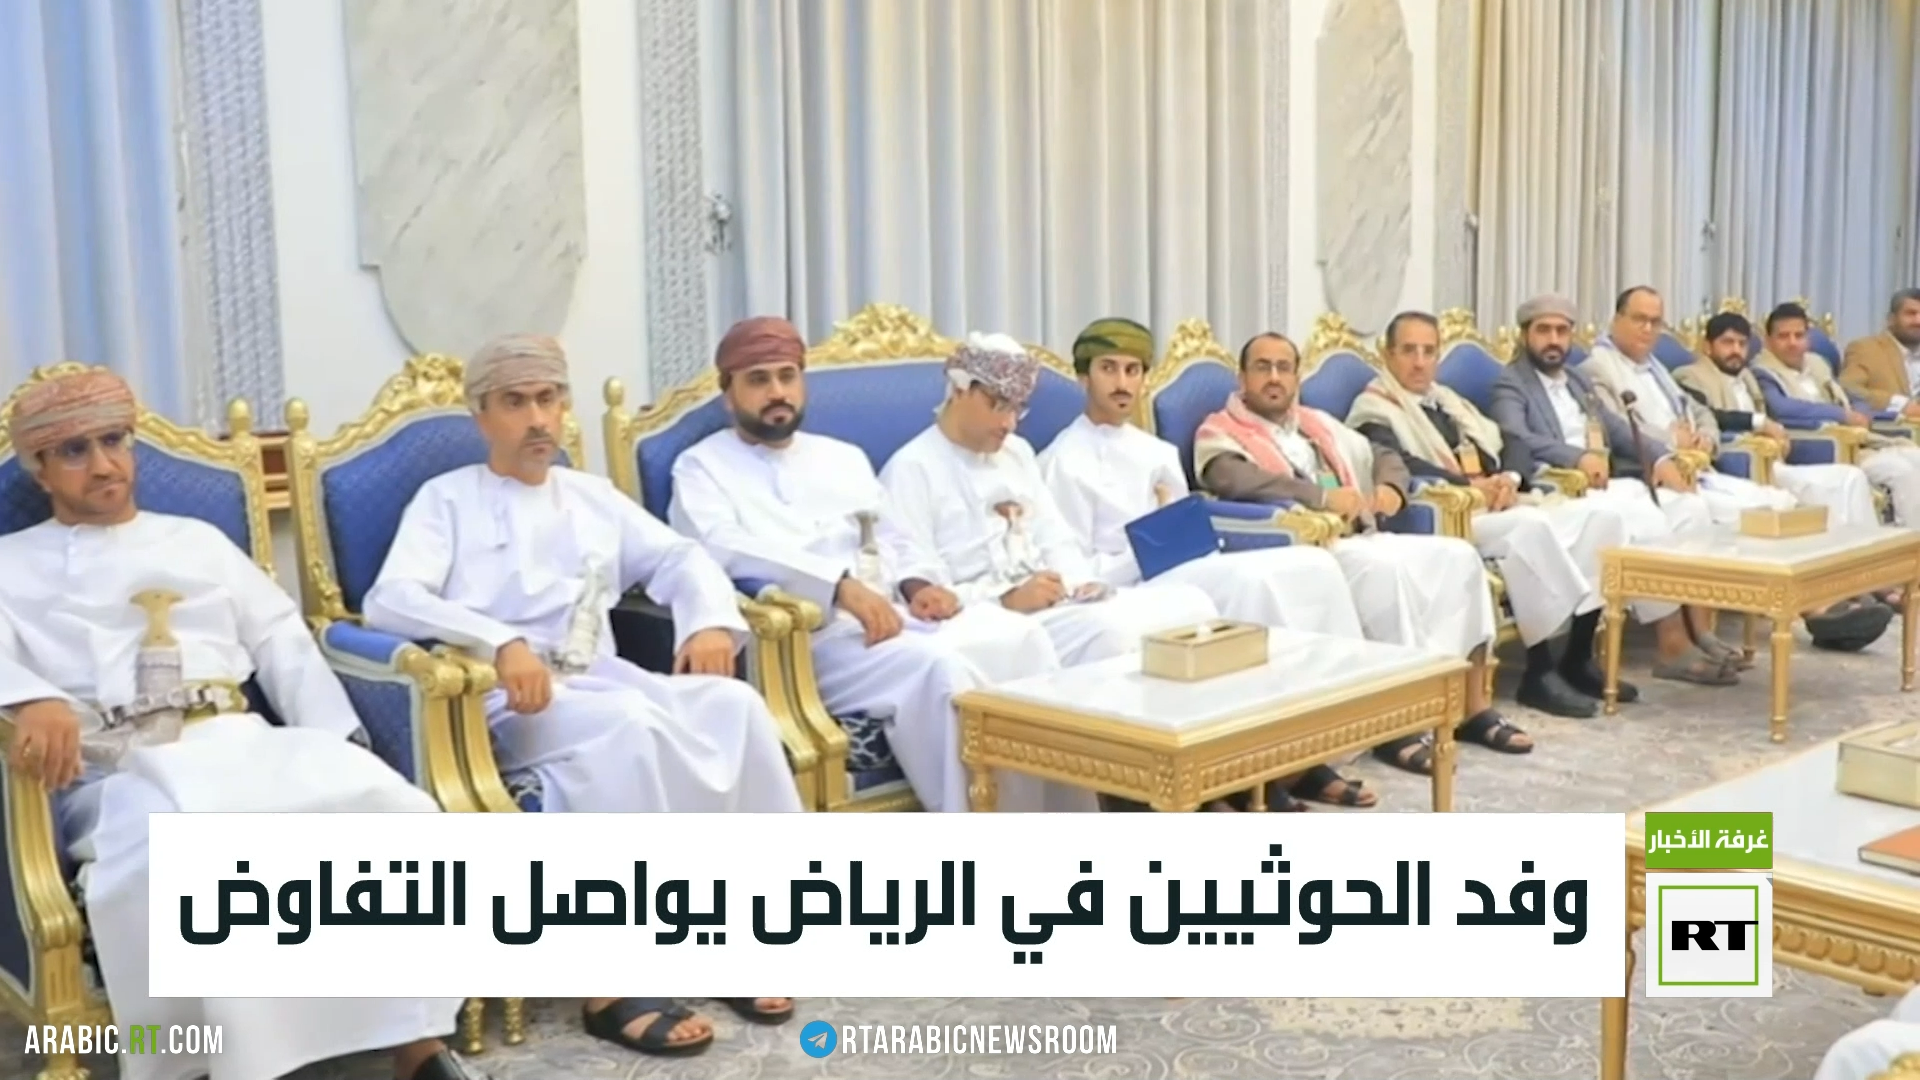 الحوثيون يعلقون على زيارة الوفد إلى الرياض ولقاء مسؤولين سعوديين بينهم وزير الدفاع الأمير خالد